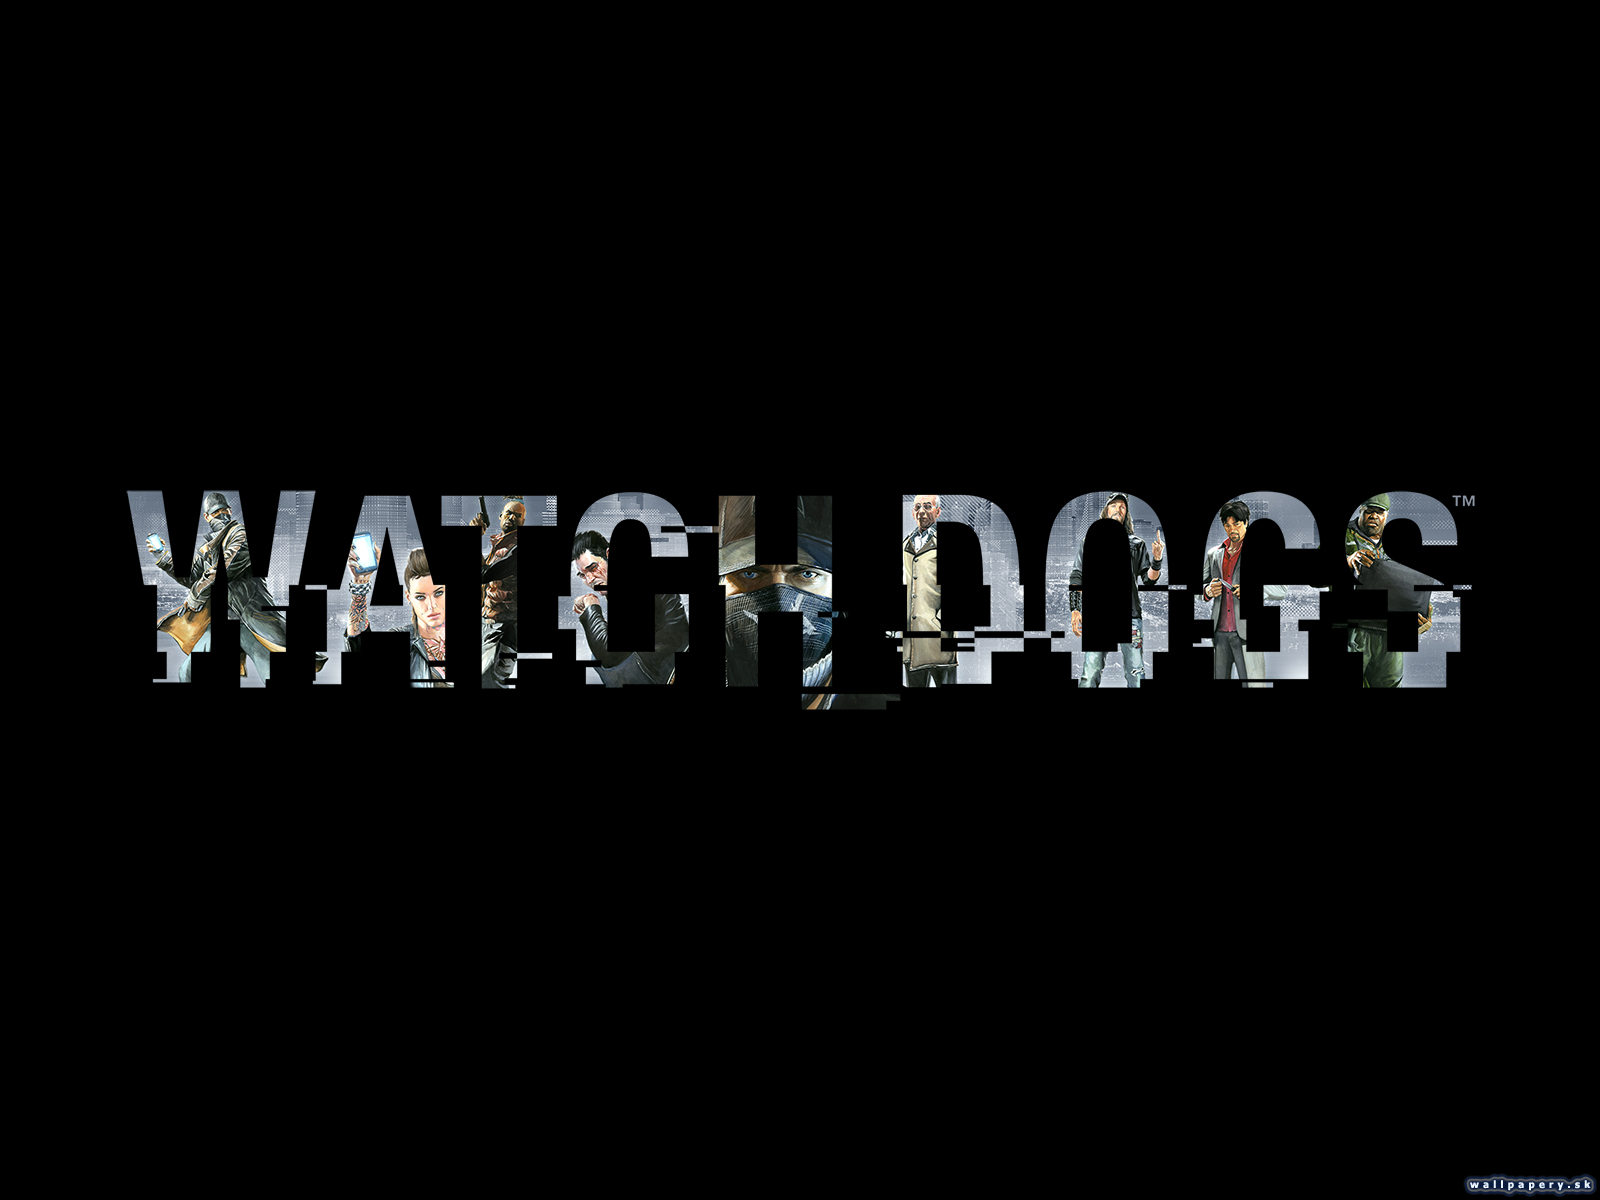 Watch Dogs - wallpaper 7